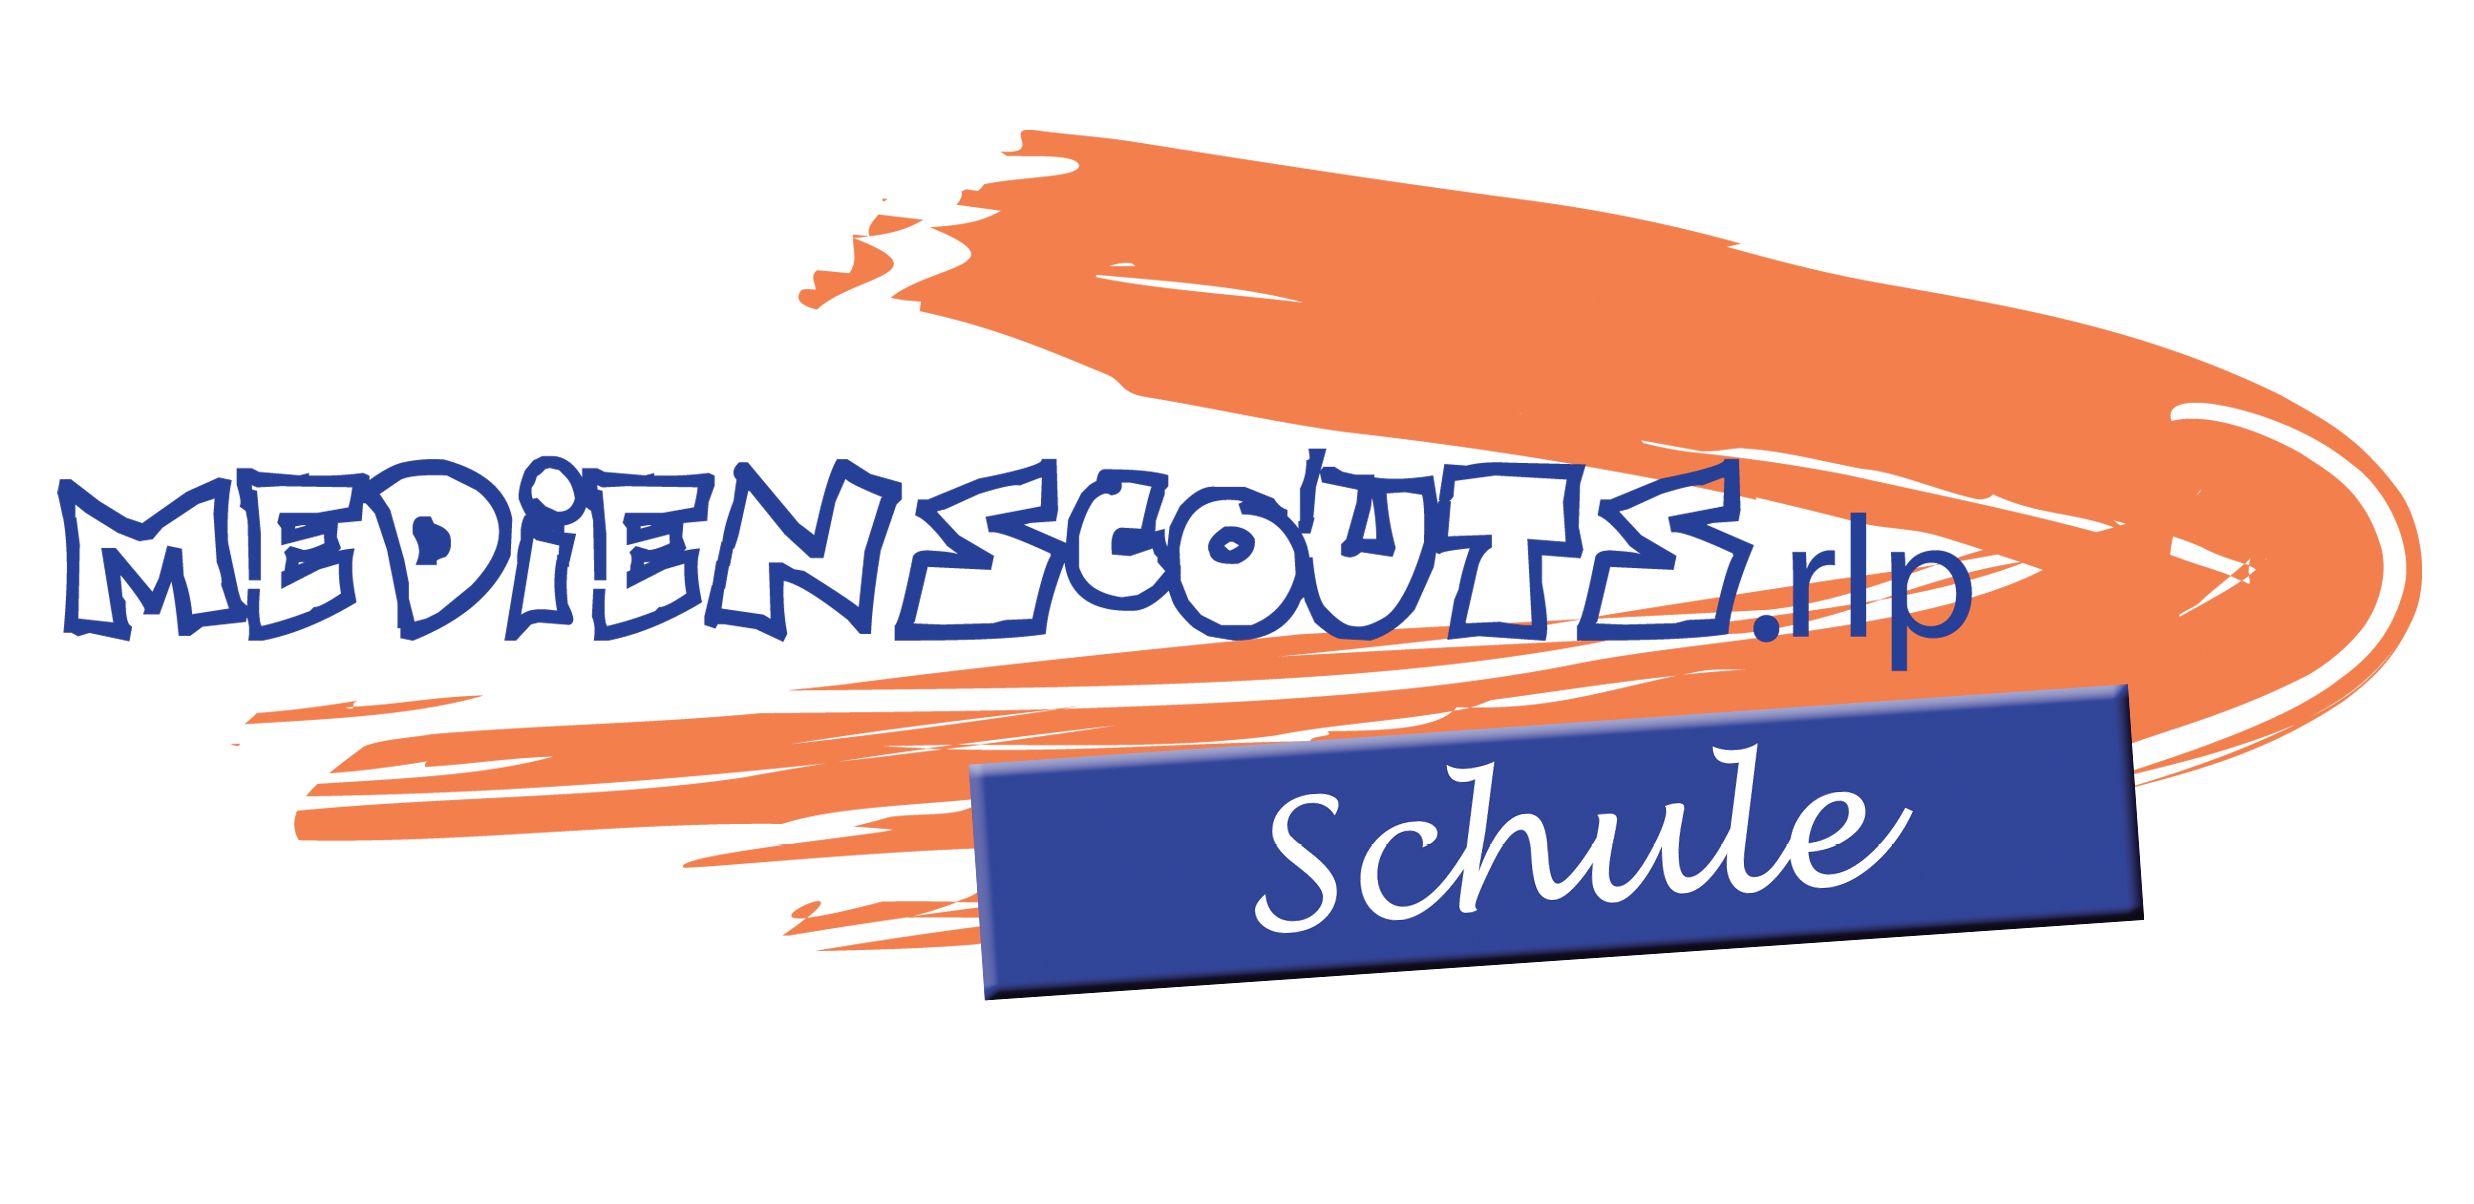 Logo_Medienscoutschule